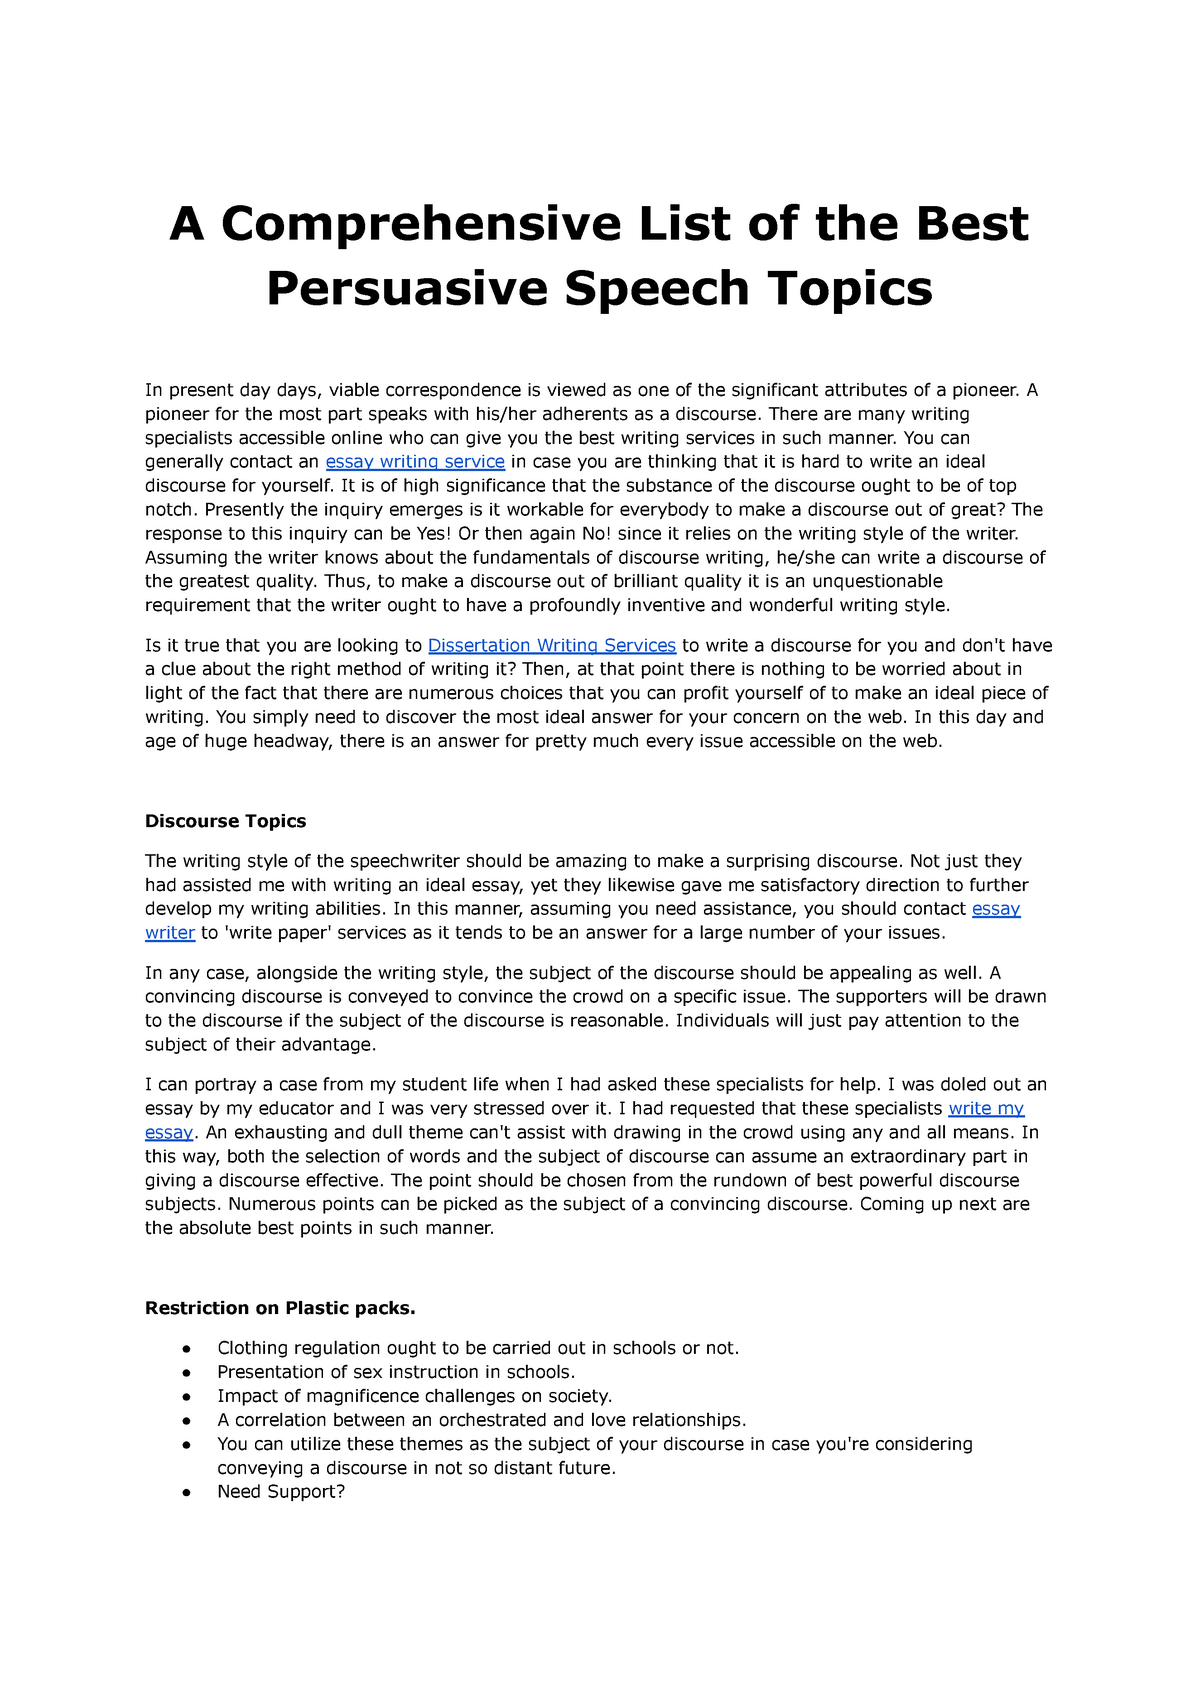 unique topics for persuasive speeches